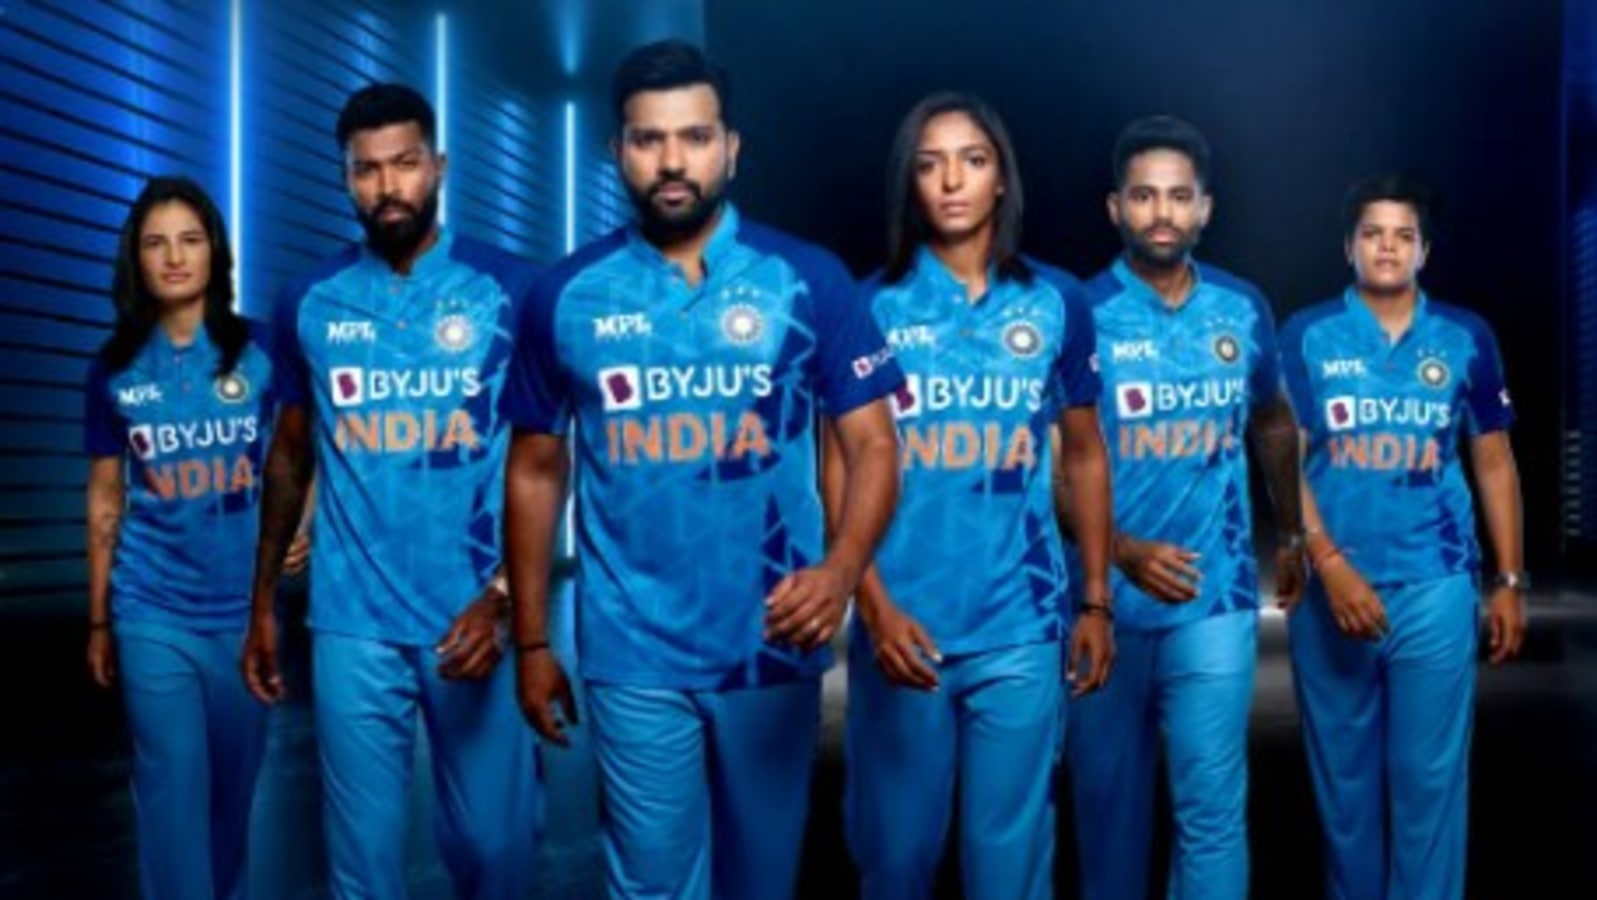 Delhi Capitals New Jersey: Delhi Capitals unveils new jersey ahead of 2022  IPL season - The Economic Times